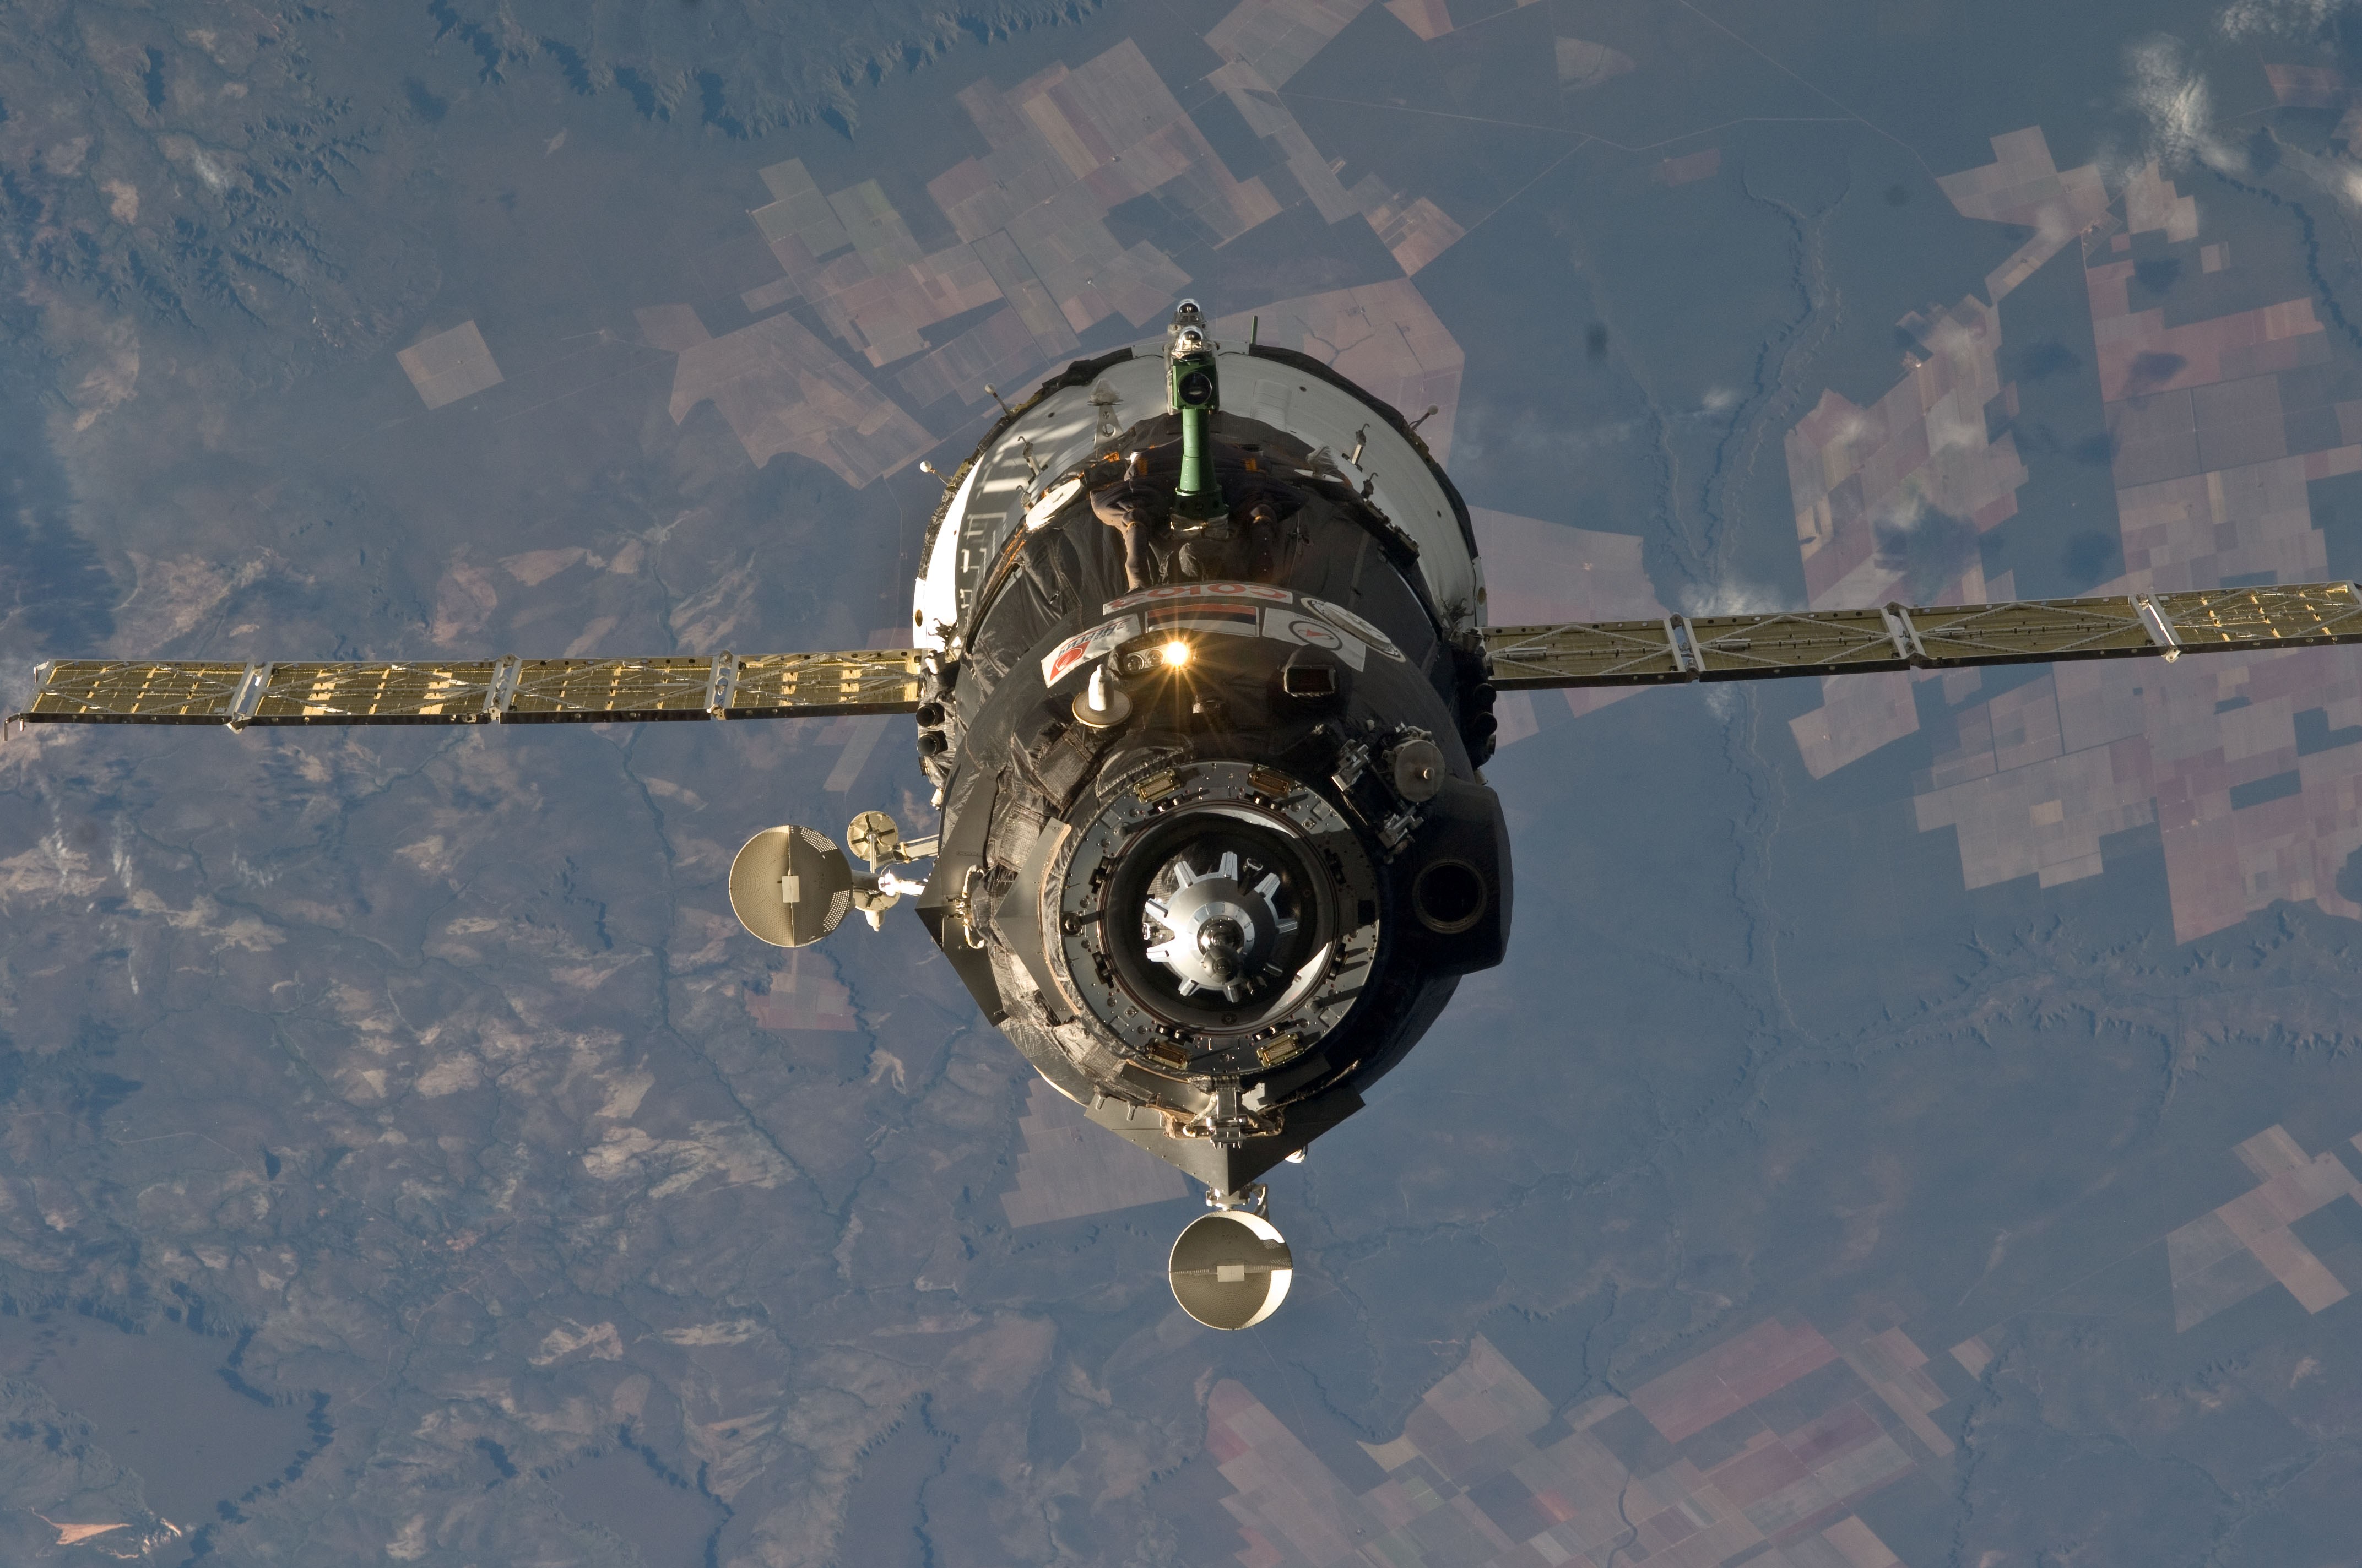 Фото космического корабля в космосе. Космический корабль Союз ТМА. Пилотируемый космический корабль Союз-ТМА. Корабля «Союз ТМА-14м». Космический корабль «Союз ТМА-21».